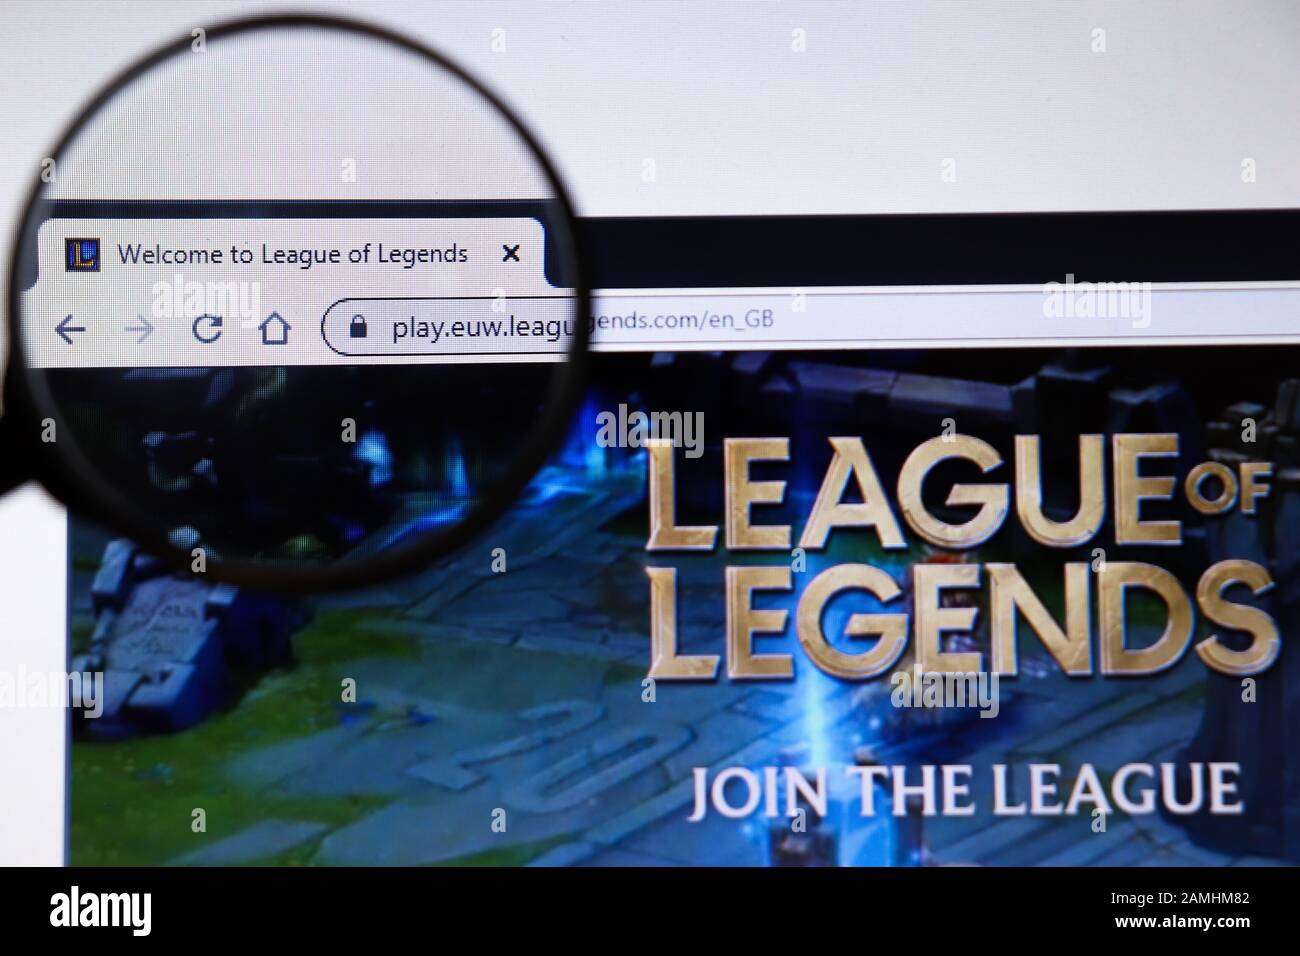 Los Angeles, California, Stati Uniti - 19 dicembre 2019: Pagina del sito Web League of Legends. Primo piano del logo Leagueoflegends.com sullo schermo del display, Illustrativo Foto Stock